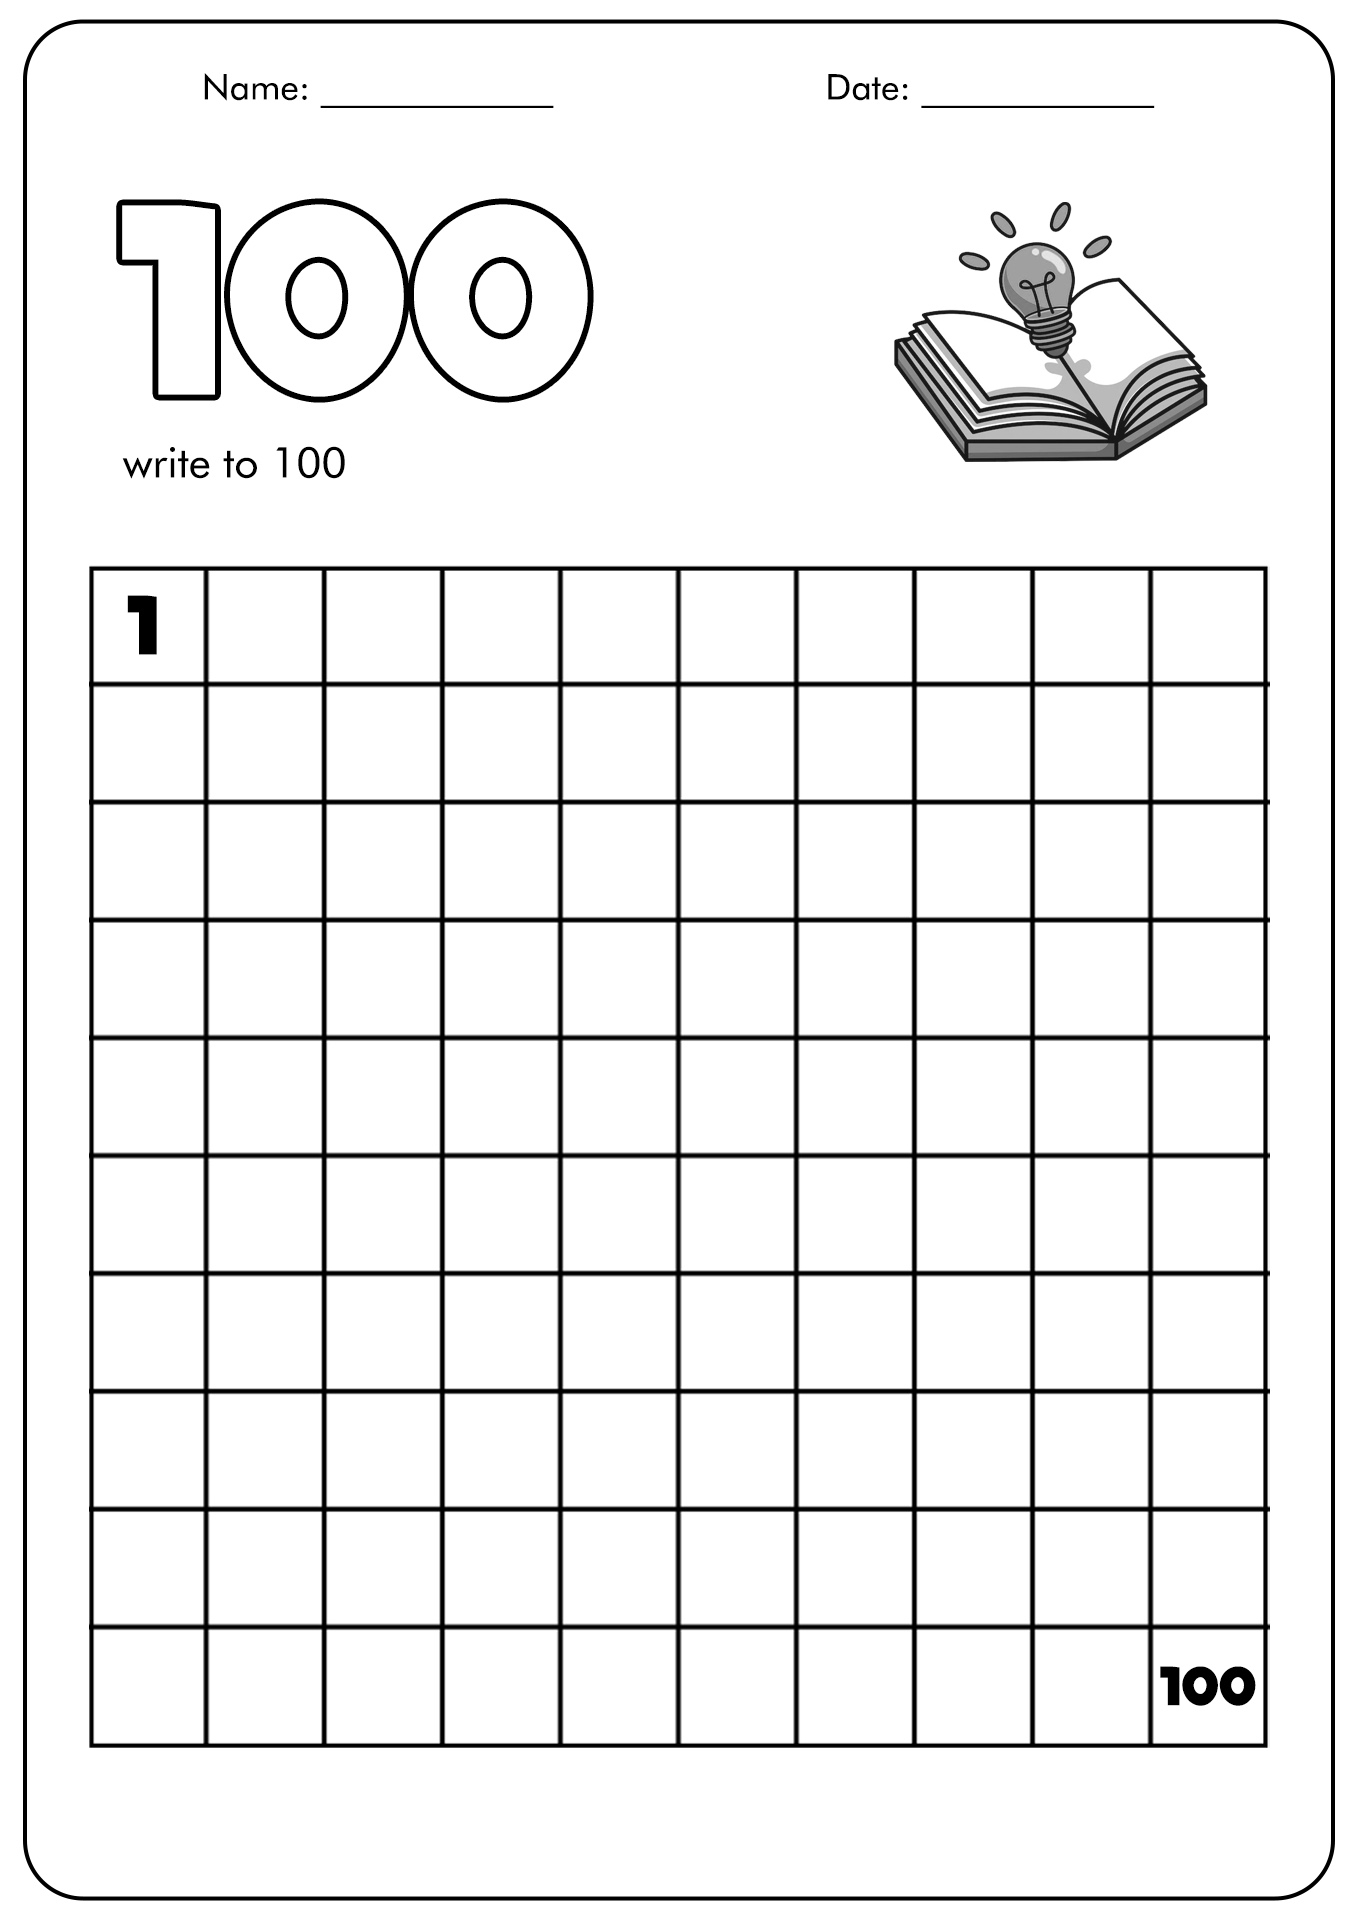 13 Best Images Of 100 Worksheet Template Printable Blank 100 Square Grid 100 Blank Worksheet 